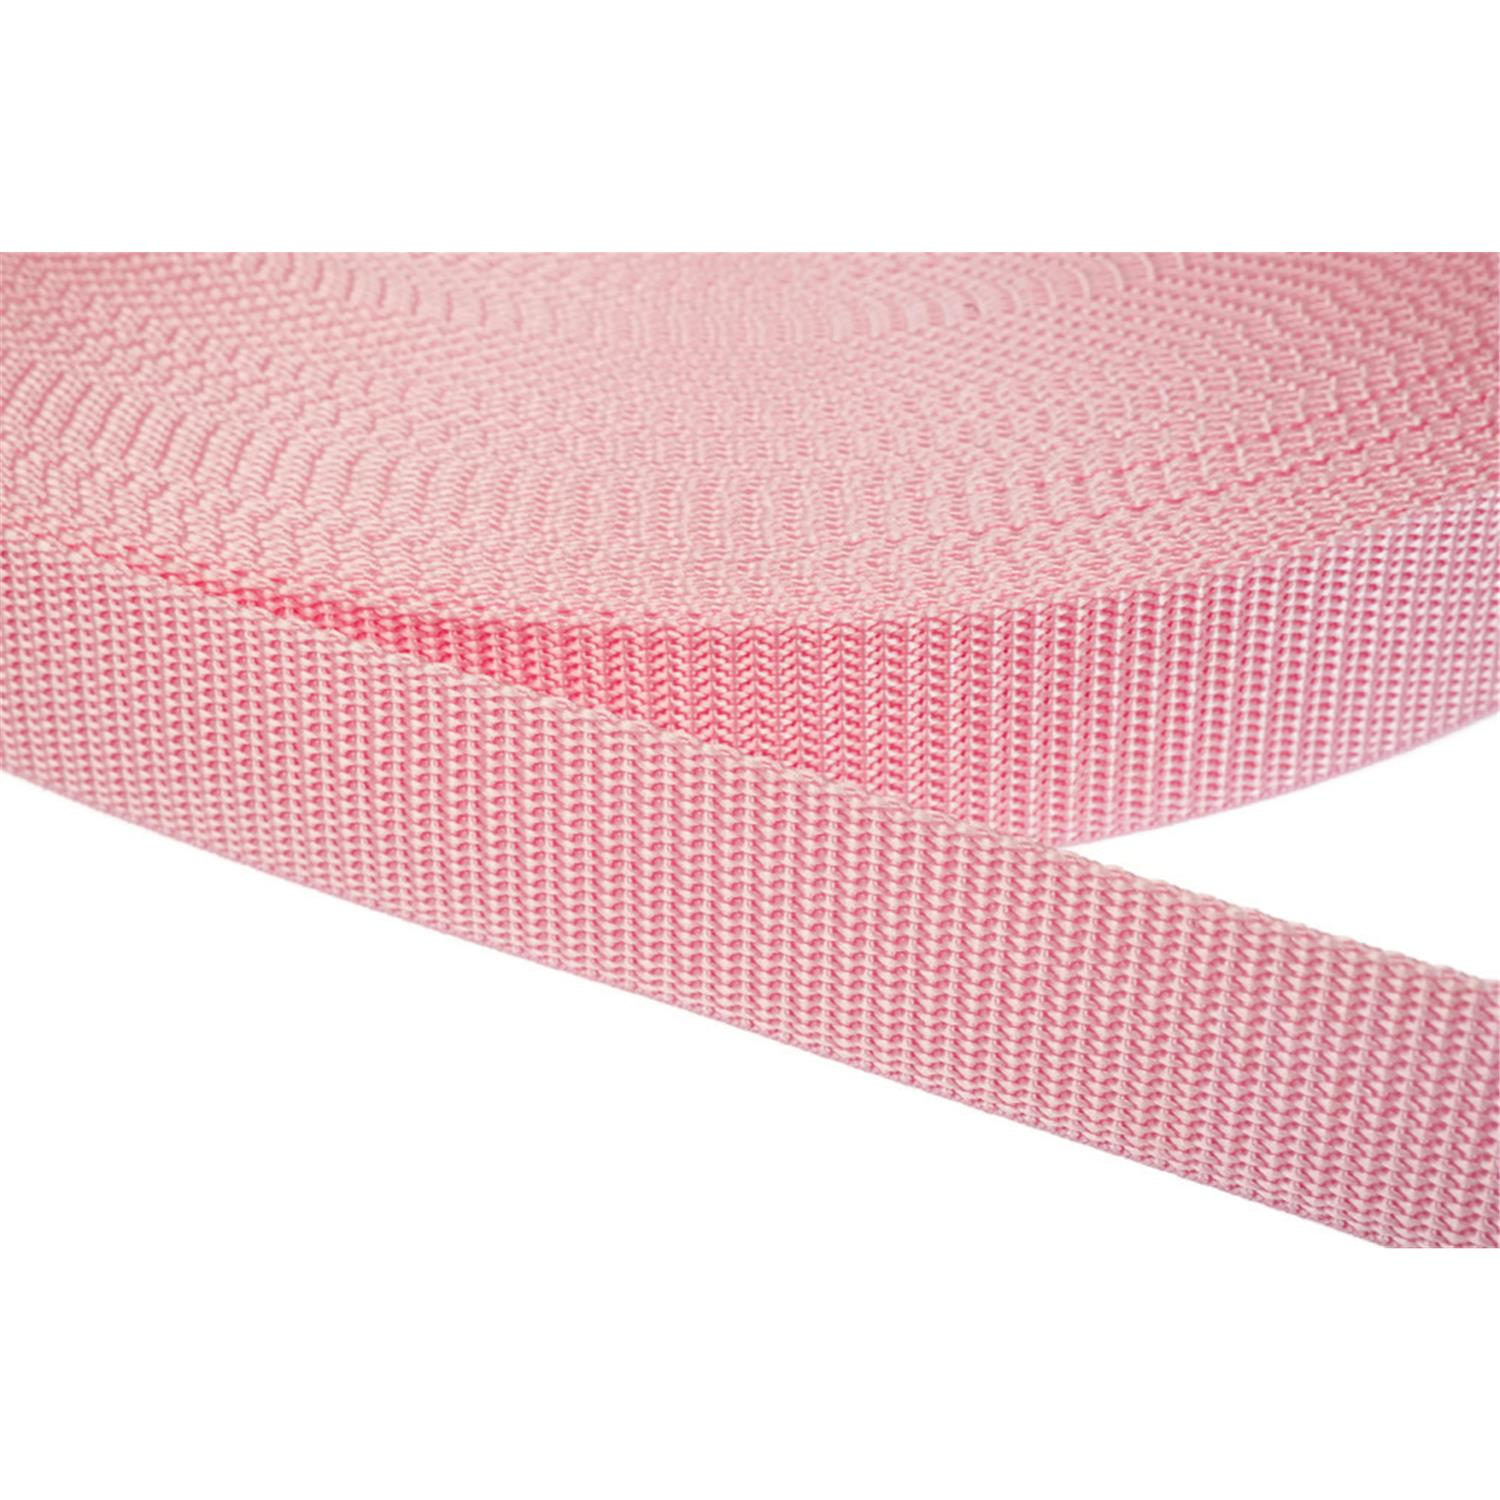 Gurtband 25mm breit aus Polypropylen in 41 Farben 12 - rosa 6 Meter